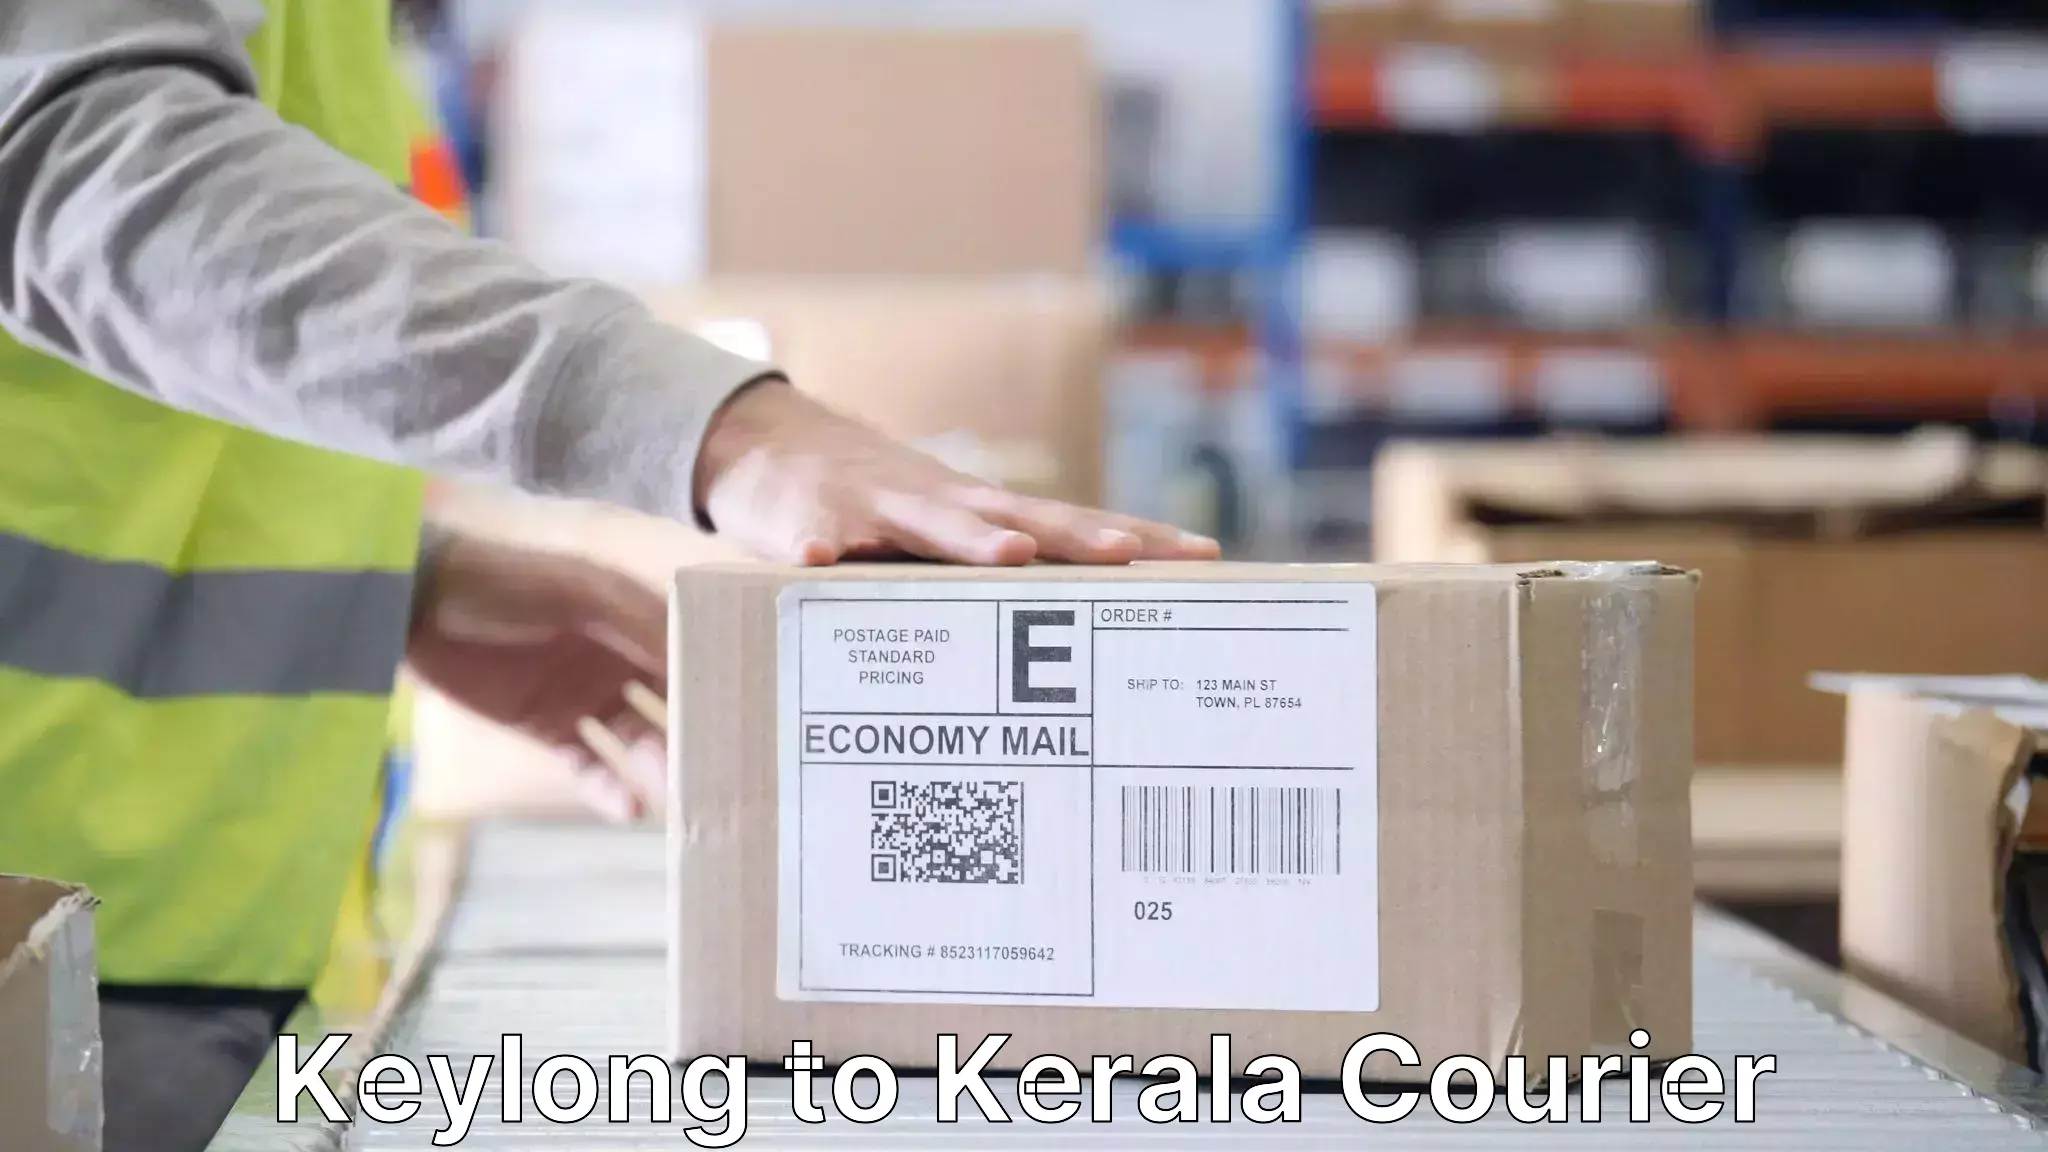 Furniture transport service Keylong to Kerala